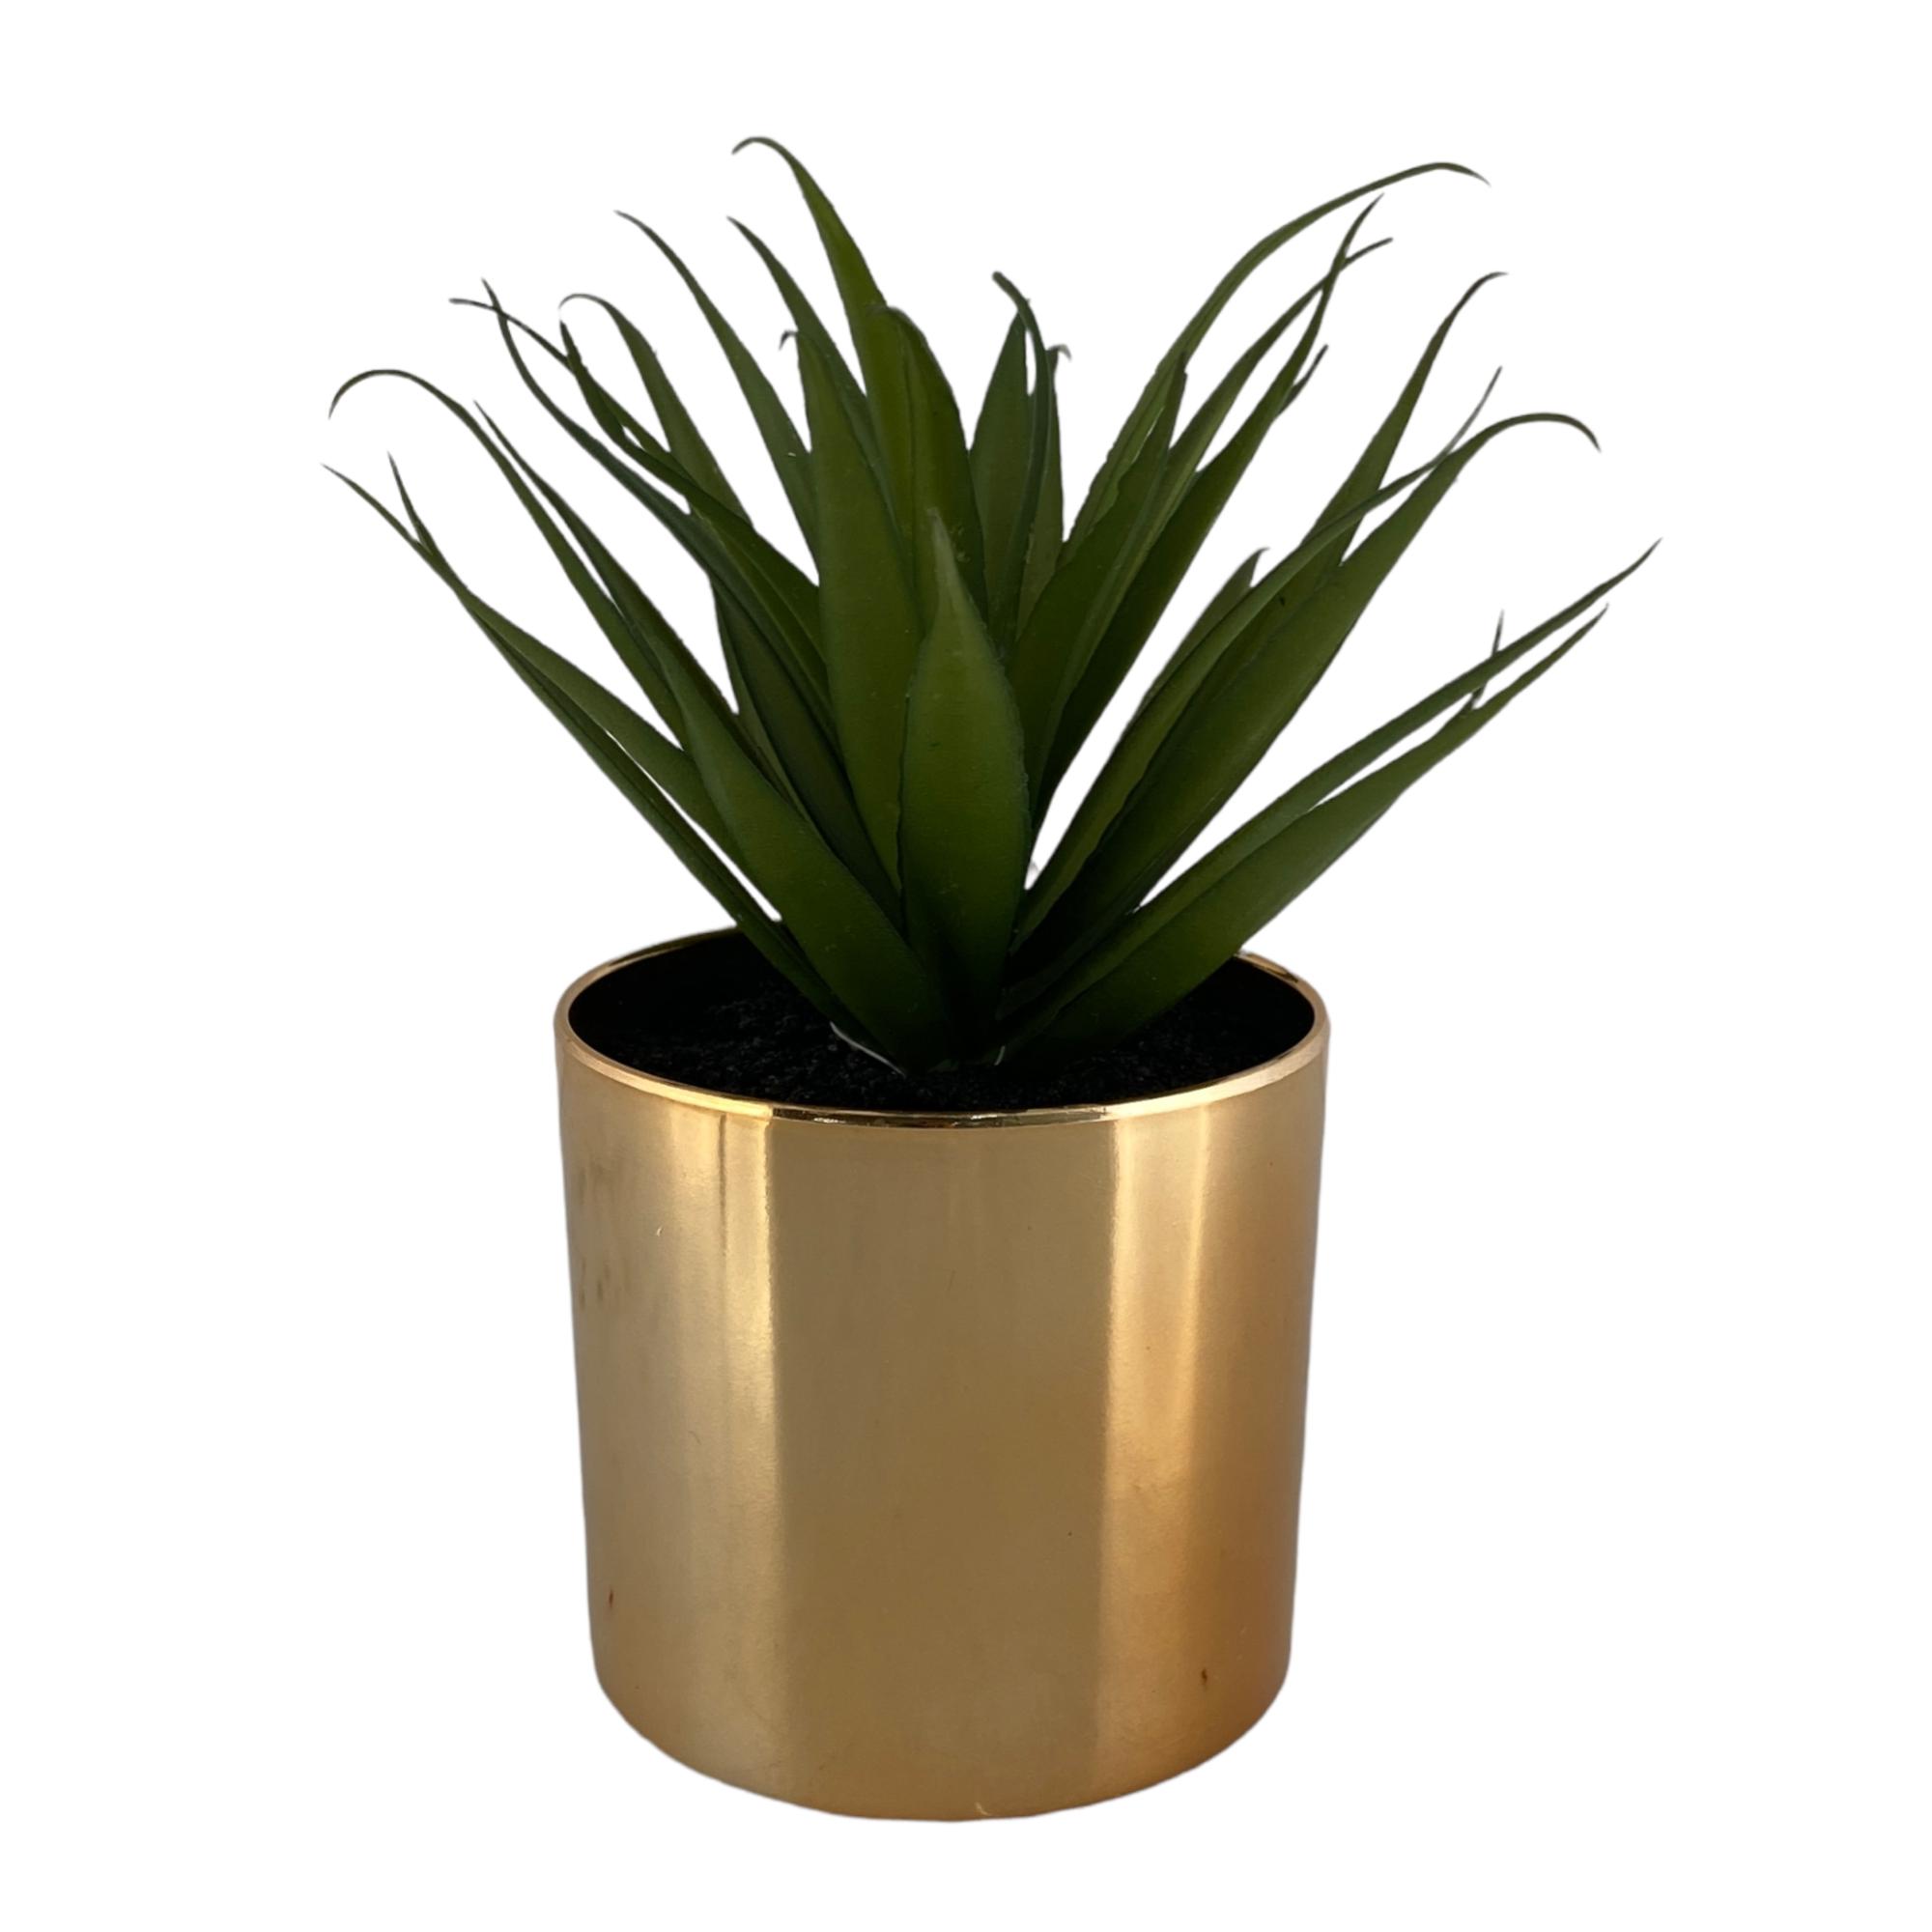 Succulent in gold plastic pot - 592-143310